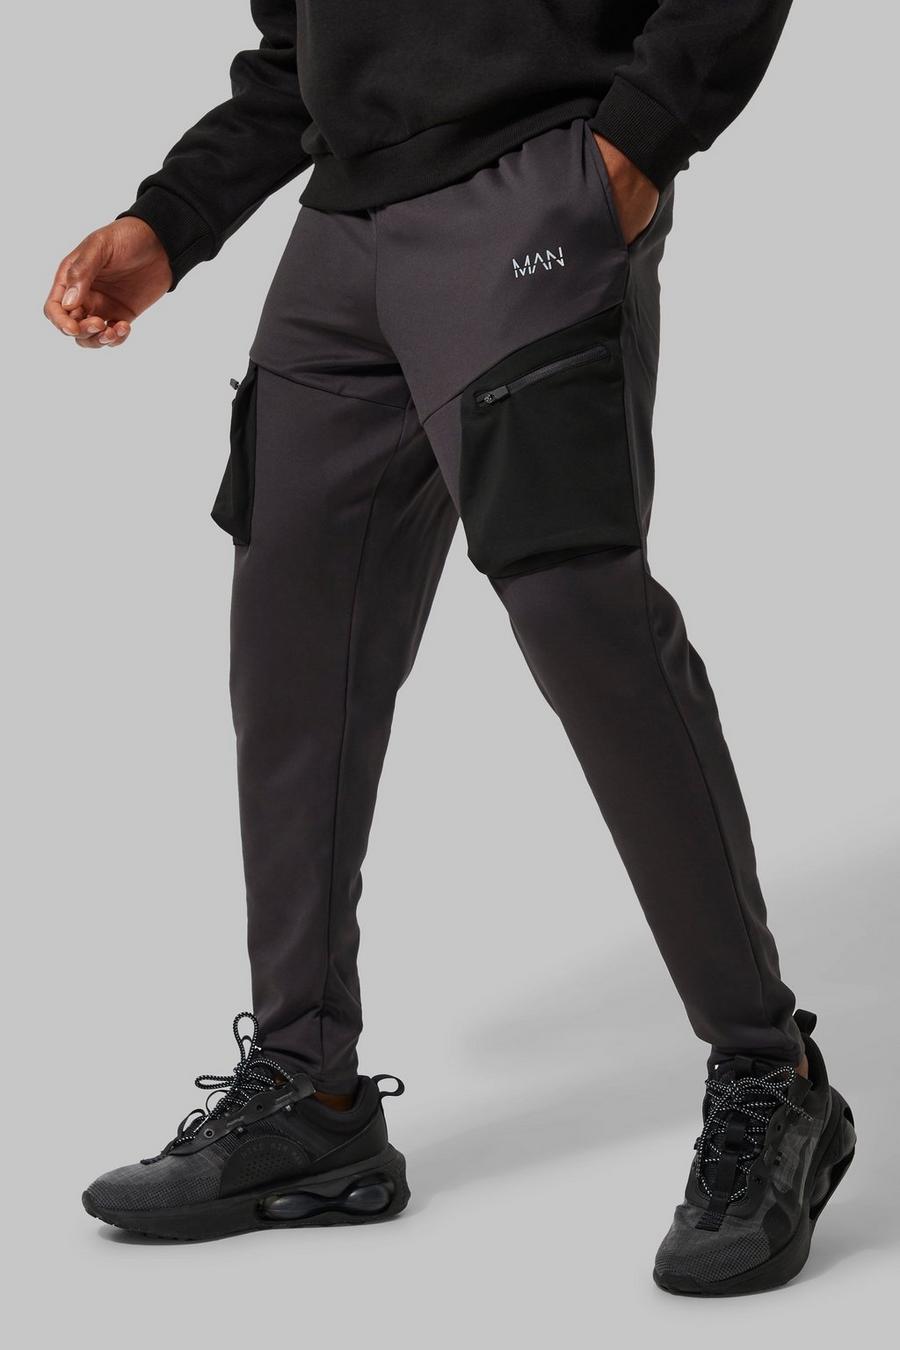 Pantalón deportivo MAN Active cargo técnico elástico, Charcoal gris